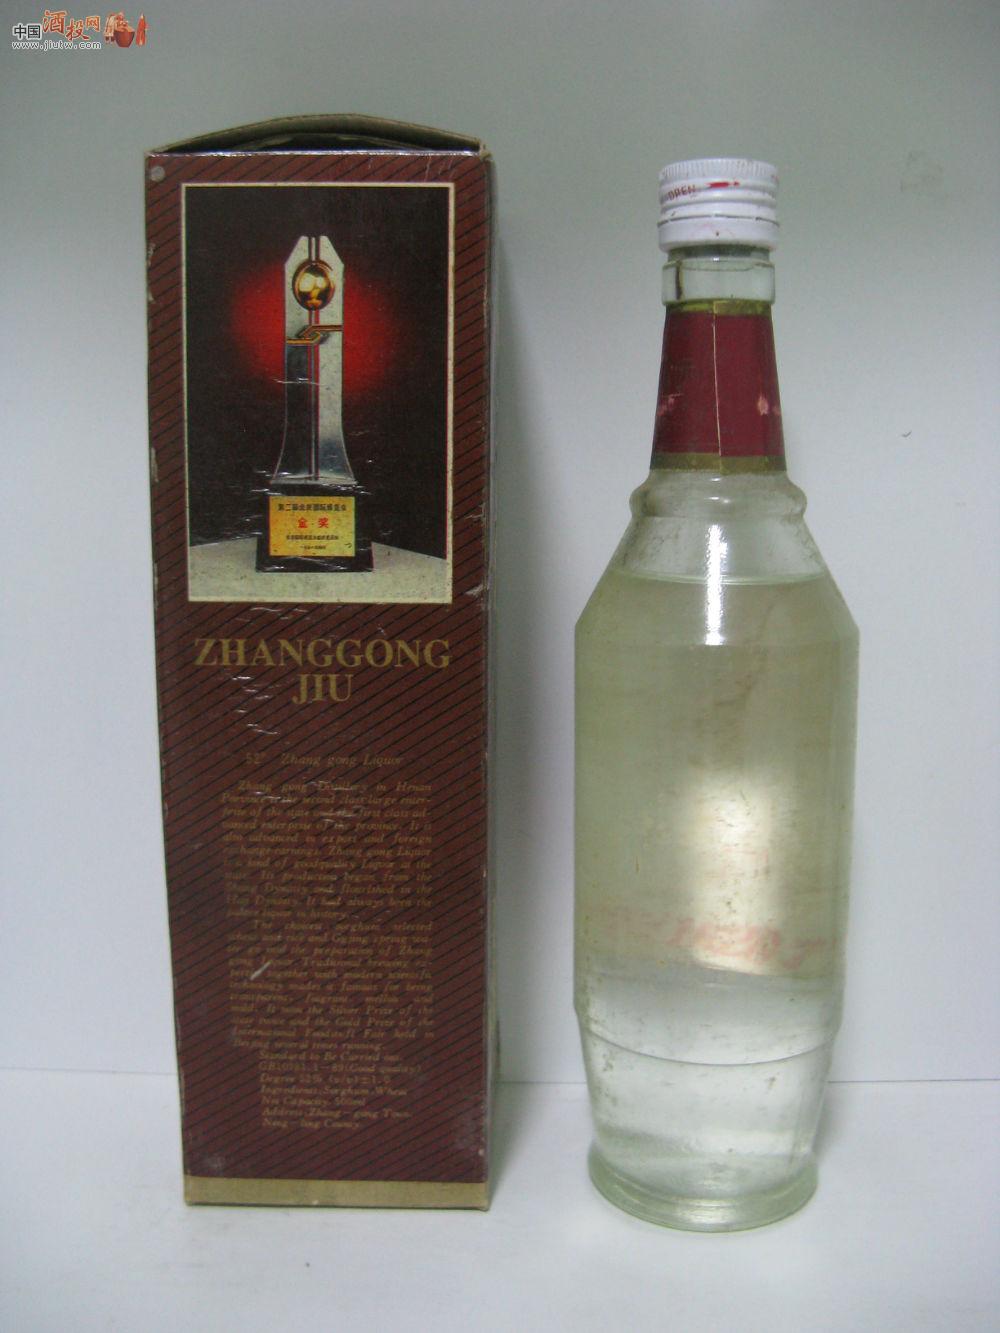 93年骑马盒子的《张弓酒》 价格表 中国酒投网